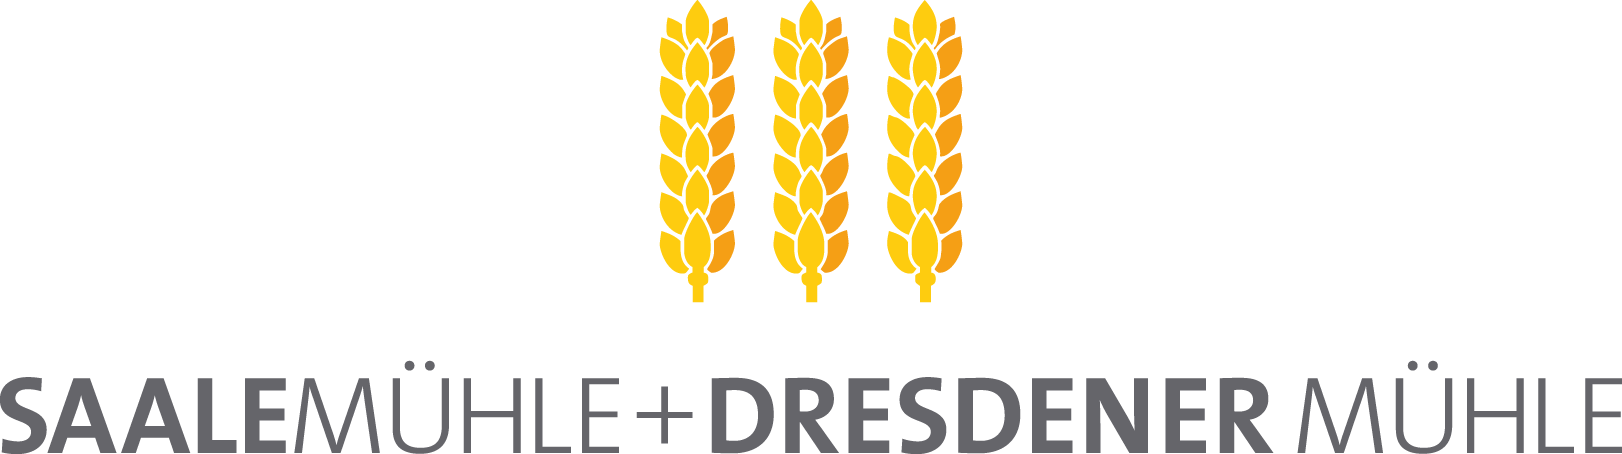 Logo Dresdener Mühle